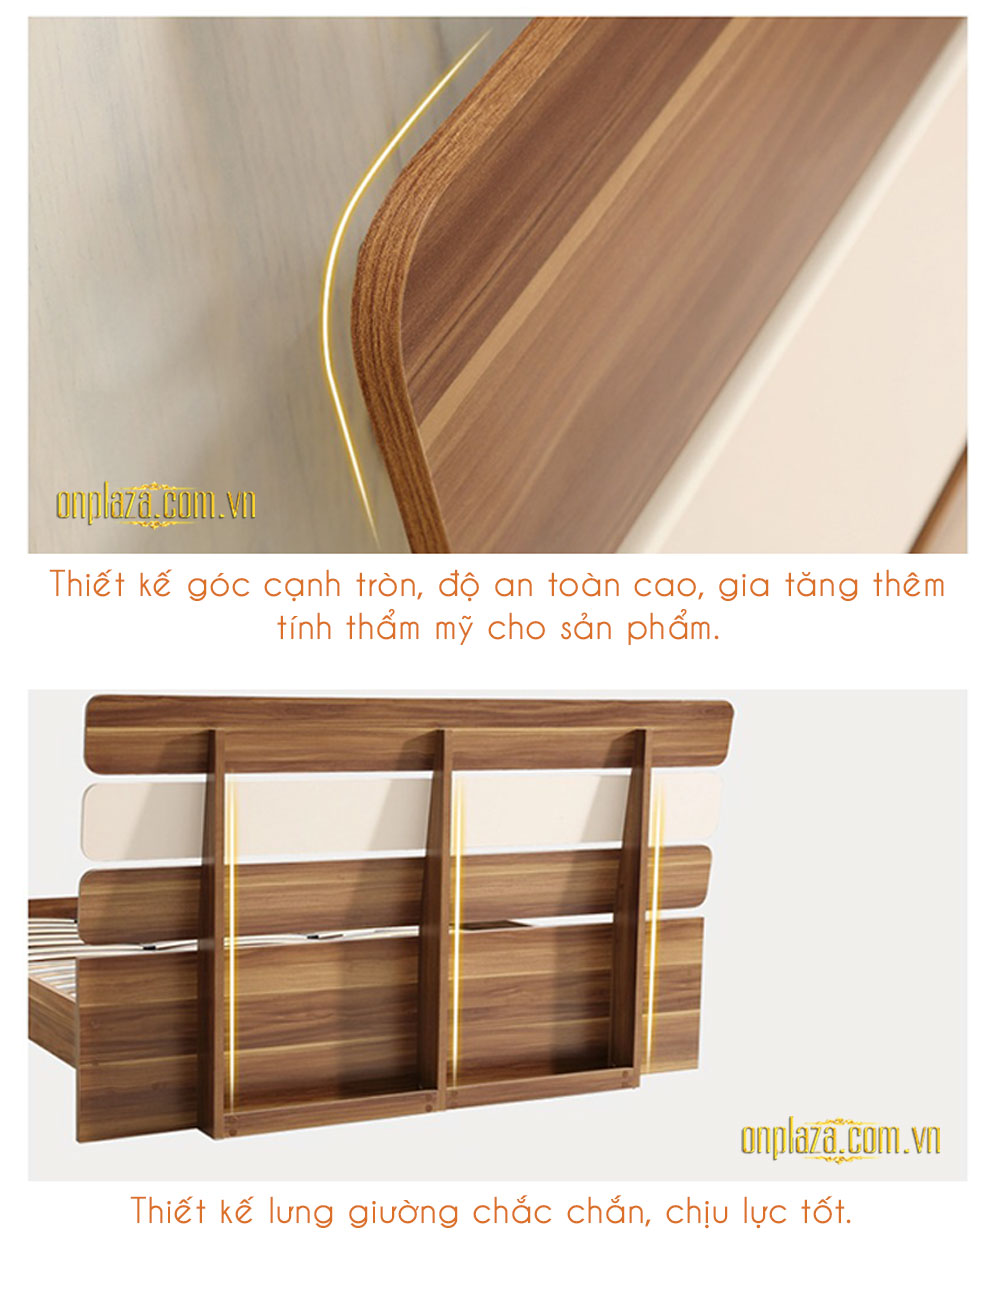 Bộ giường gỗ hiện đại + 2 Tab giường cao cấp G23